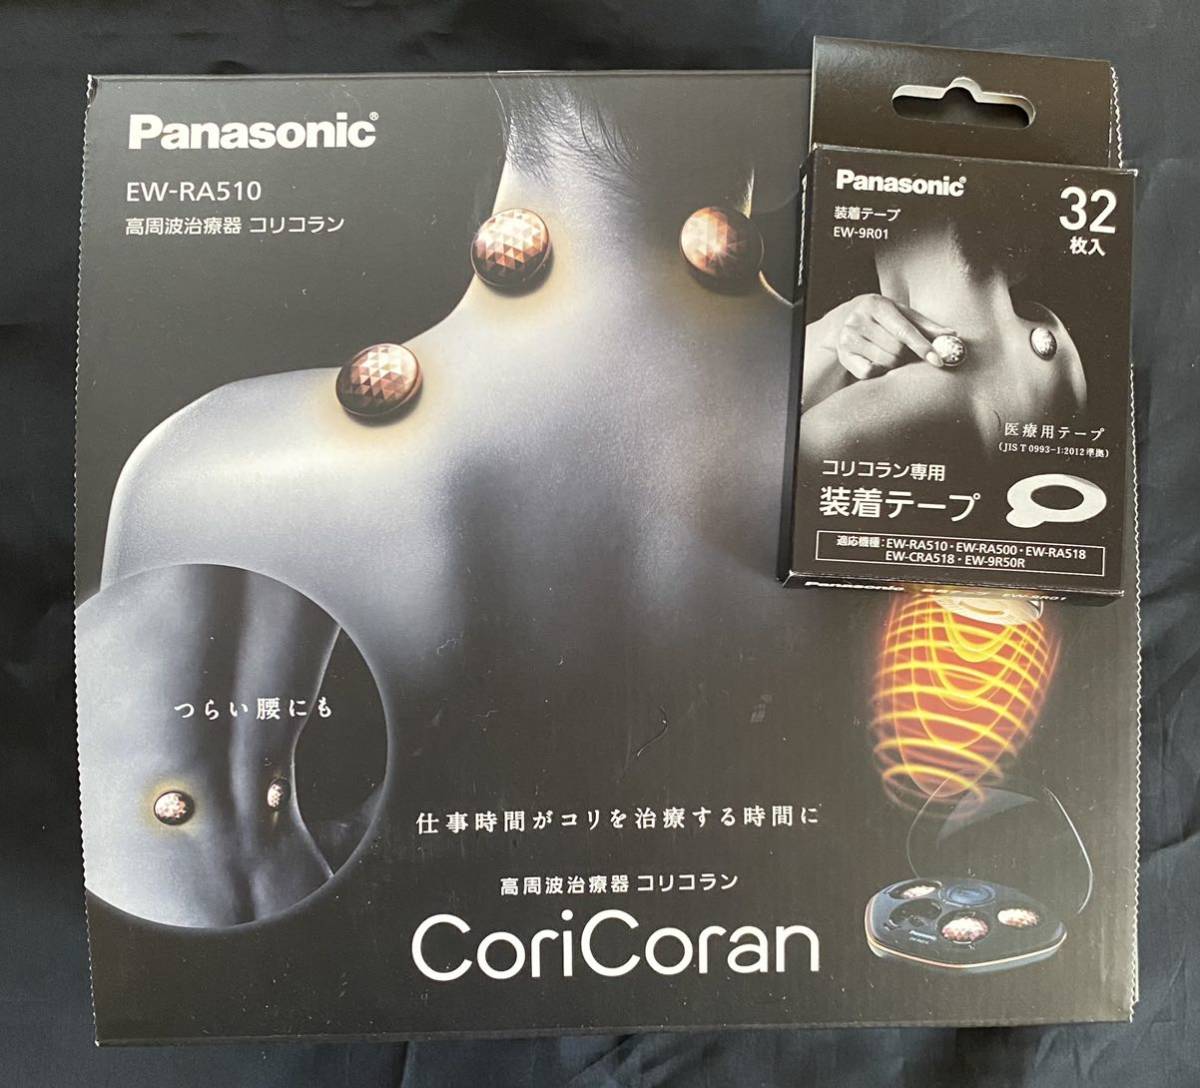 最新入荷 パナソニック Panasonic 高周波治療器コリコラン用装着テープ EW-9R01 advancesportswear.net